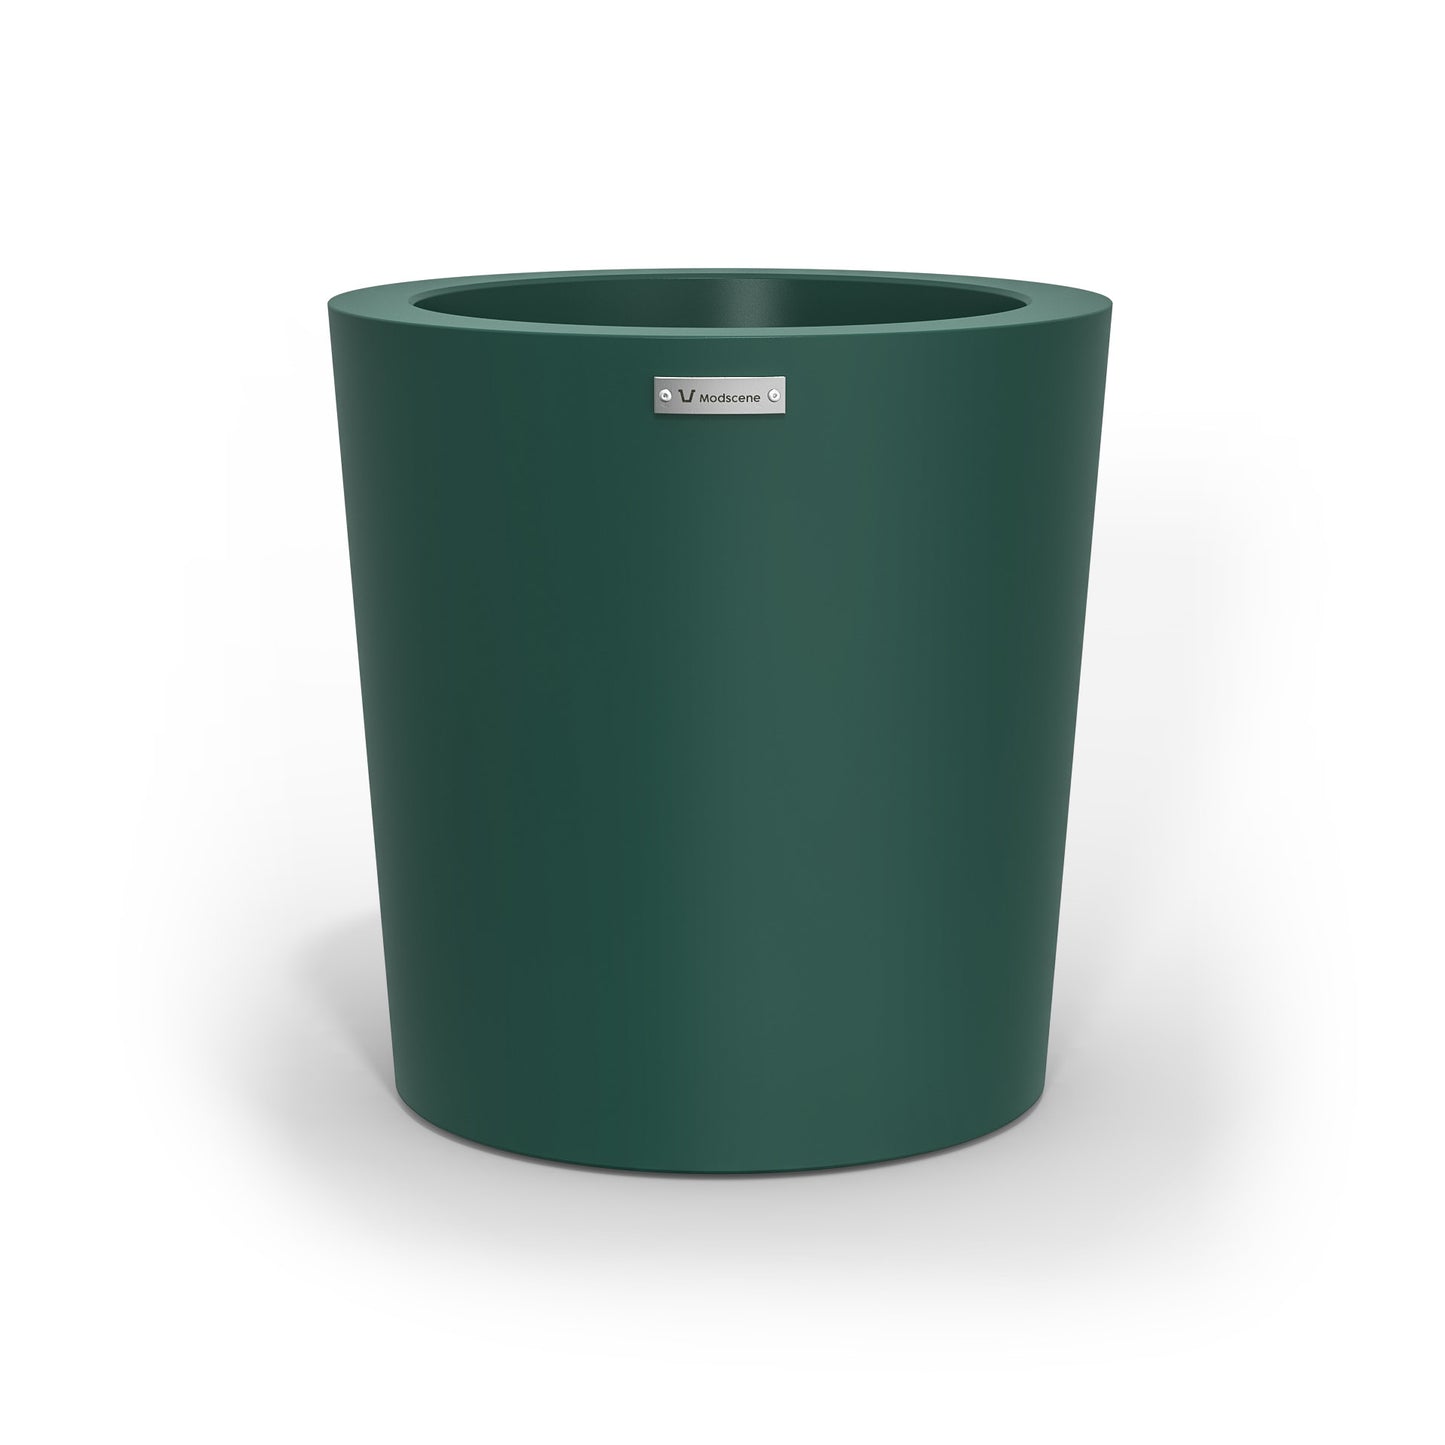 A modern designer planter pot in a emerald green colour. 